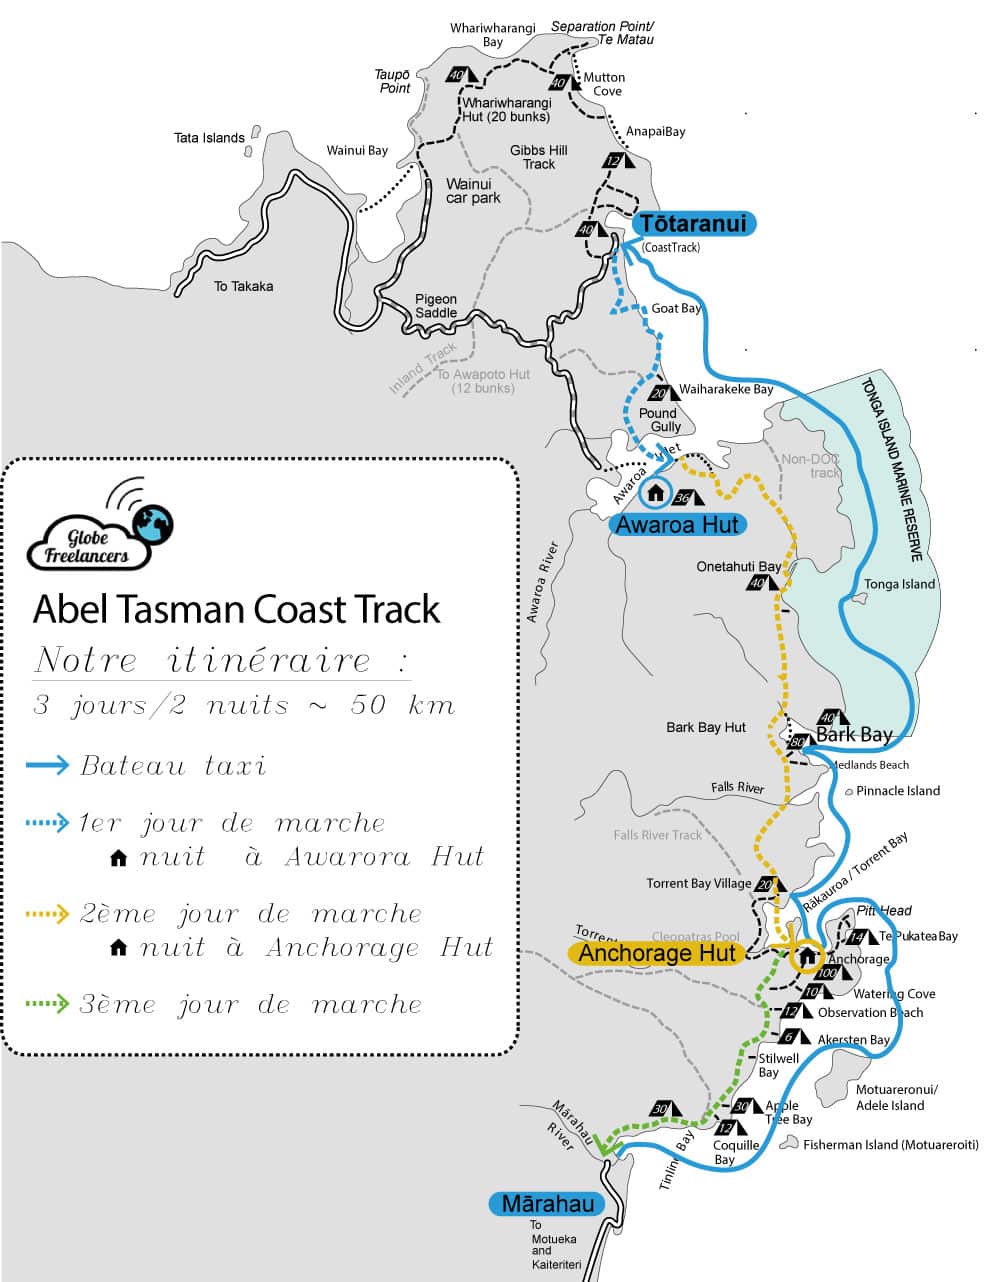 Itinéraire de randonnée pour le parc national Abel Tasman en Nouvelle Zélande sur l'île du Sud